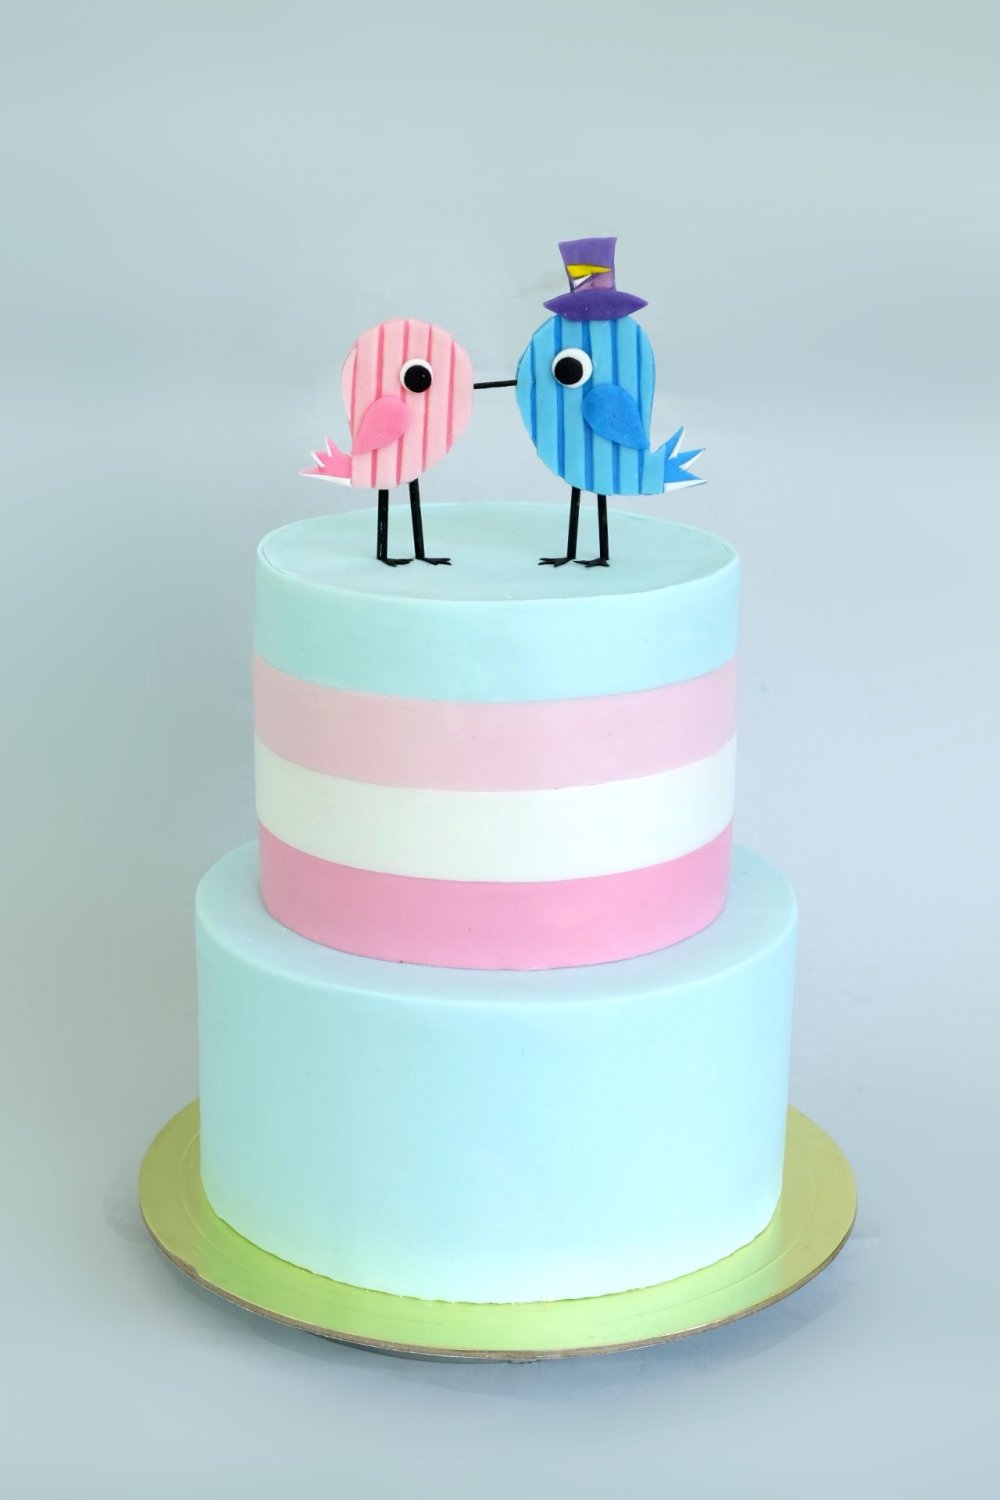 Современный минималистичный свадебный тортик с парой птичек и полосатым верхним ярусом. Обтяжка и декор из мастики, Нежные пастельные цвета: лазурный, белый и несколько оттенков розового